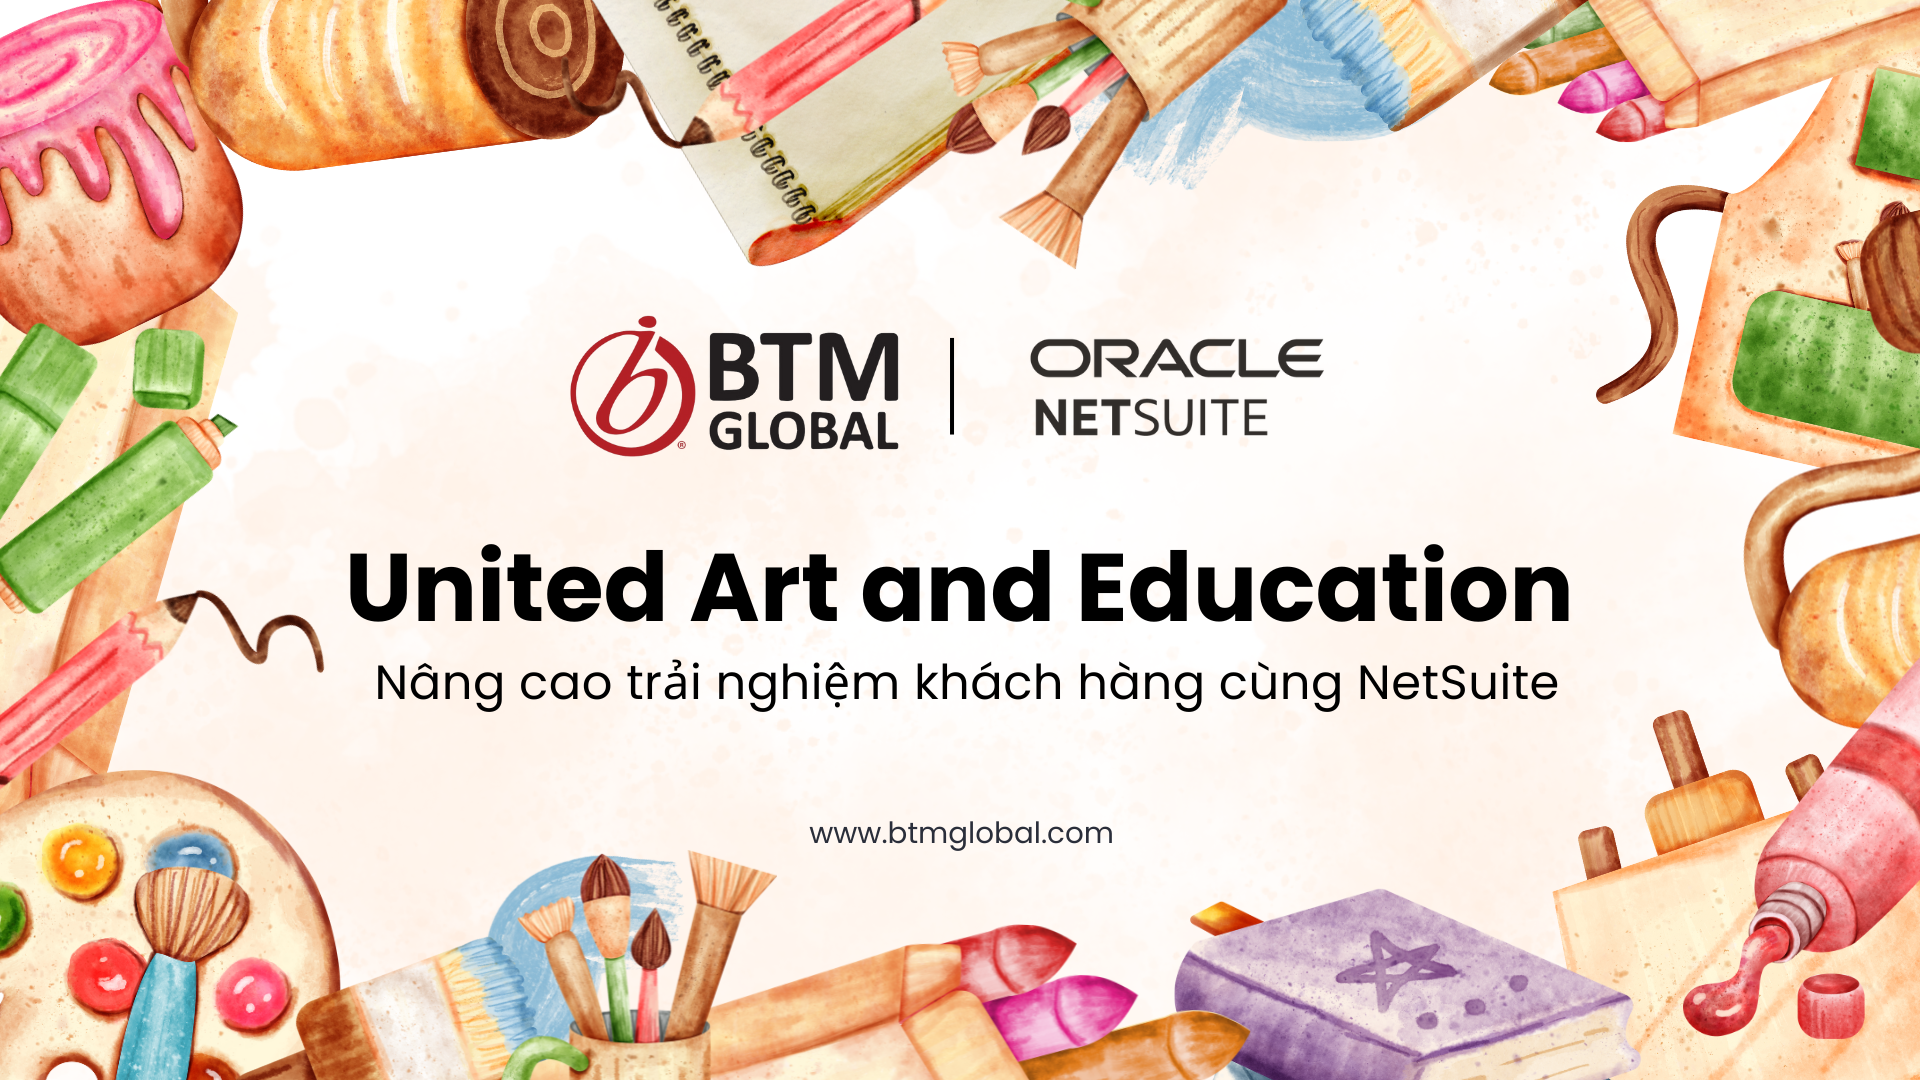 United Art and Education – Nâng cao trải nghiệm khách hàng cùng NetSuite